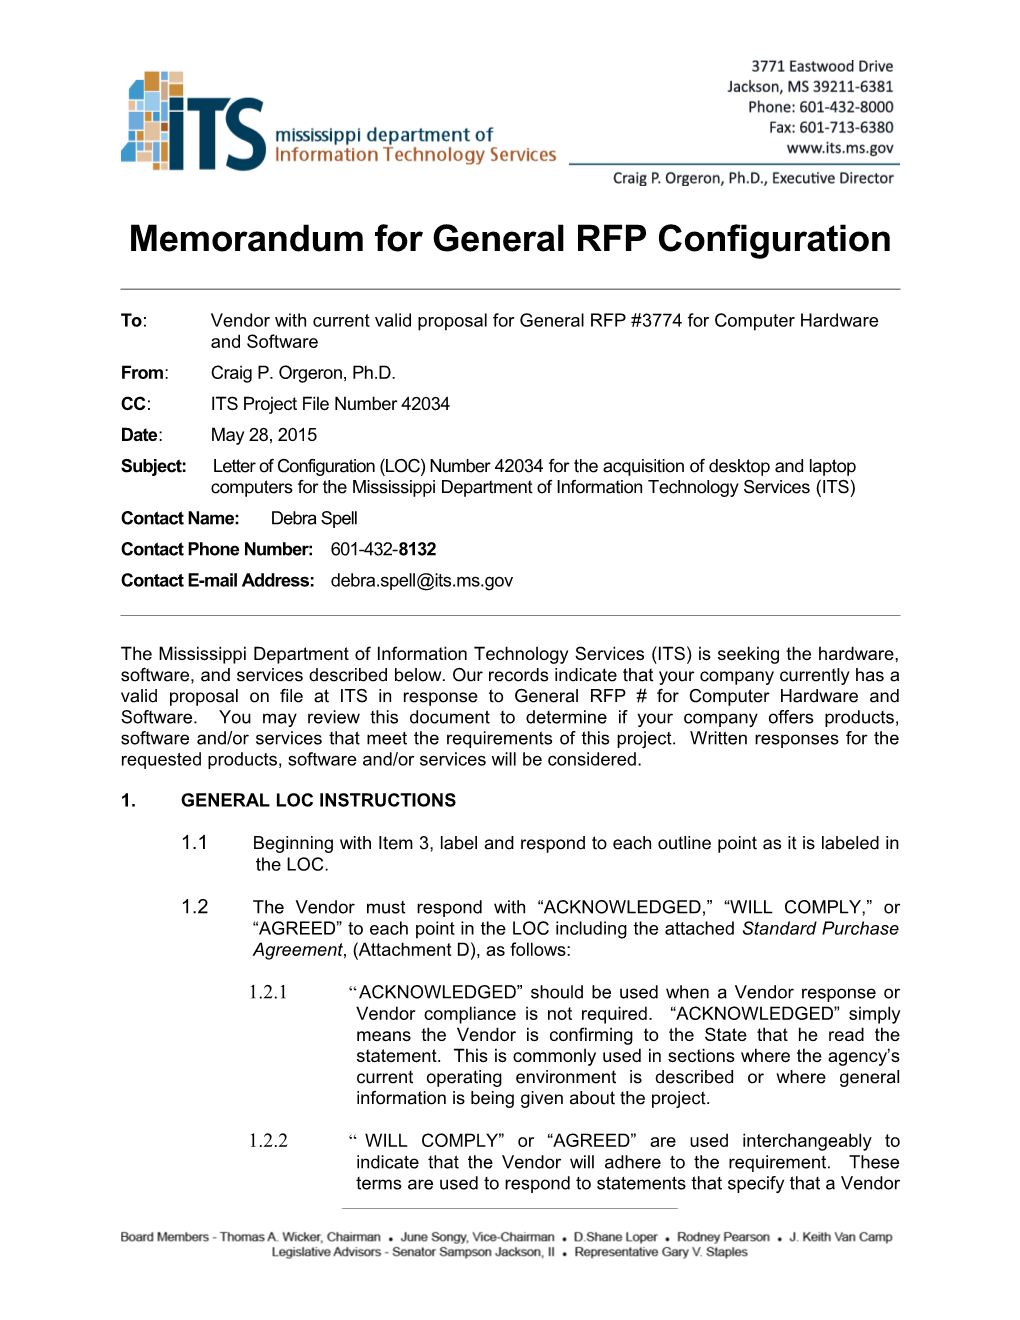 Memorandum for General RFP Configuration s4